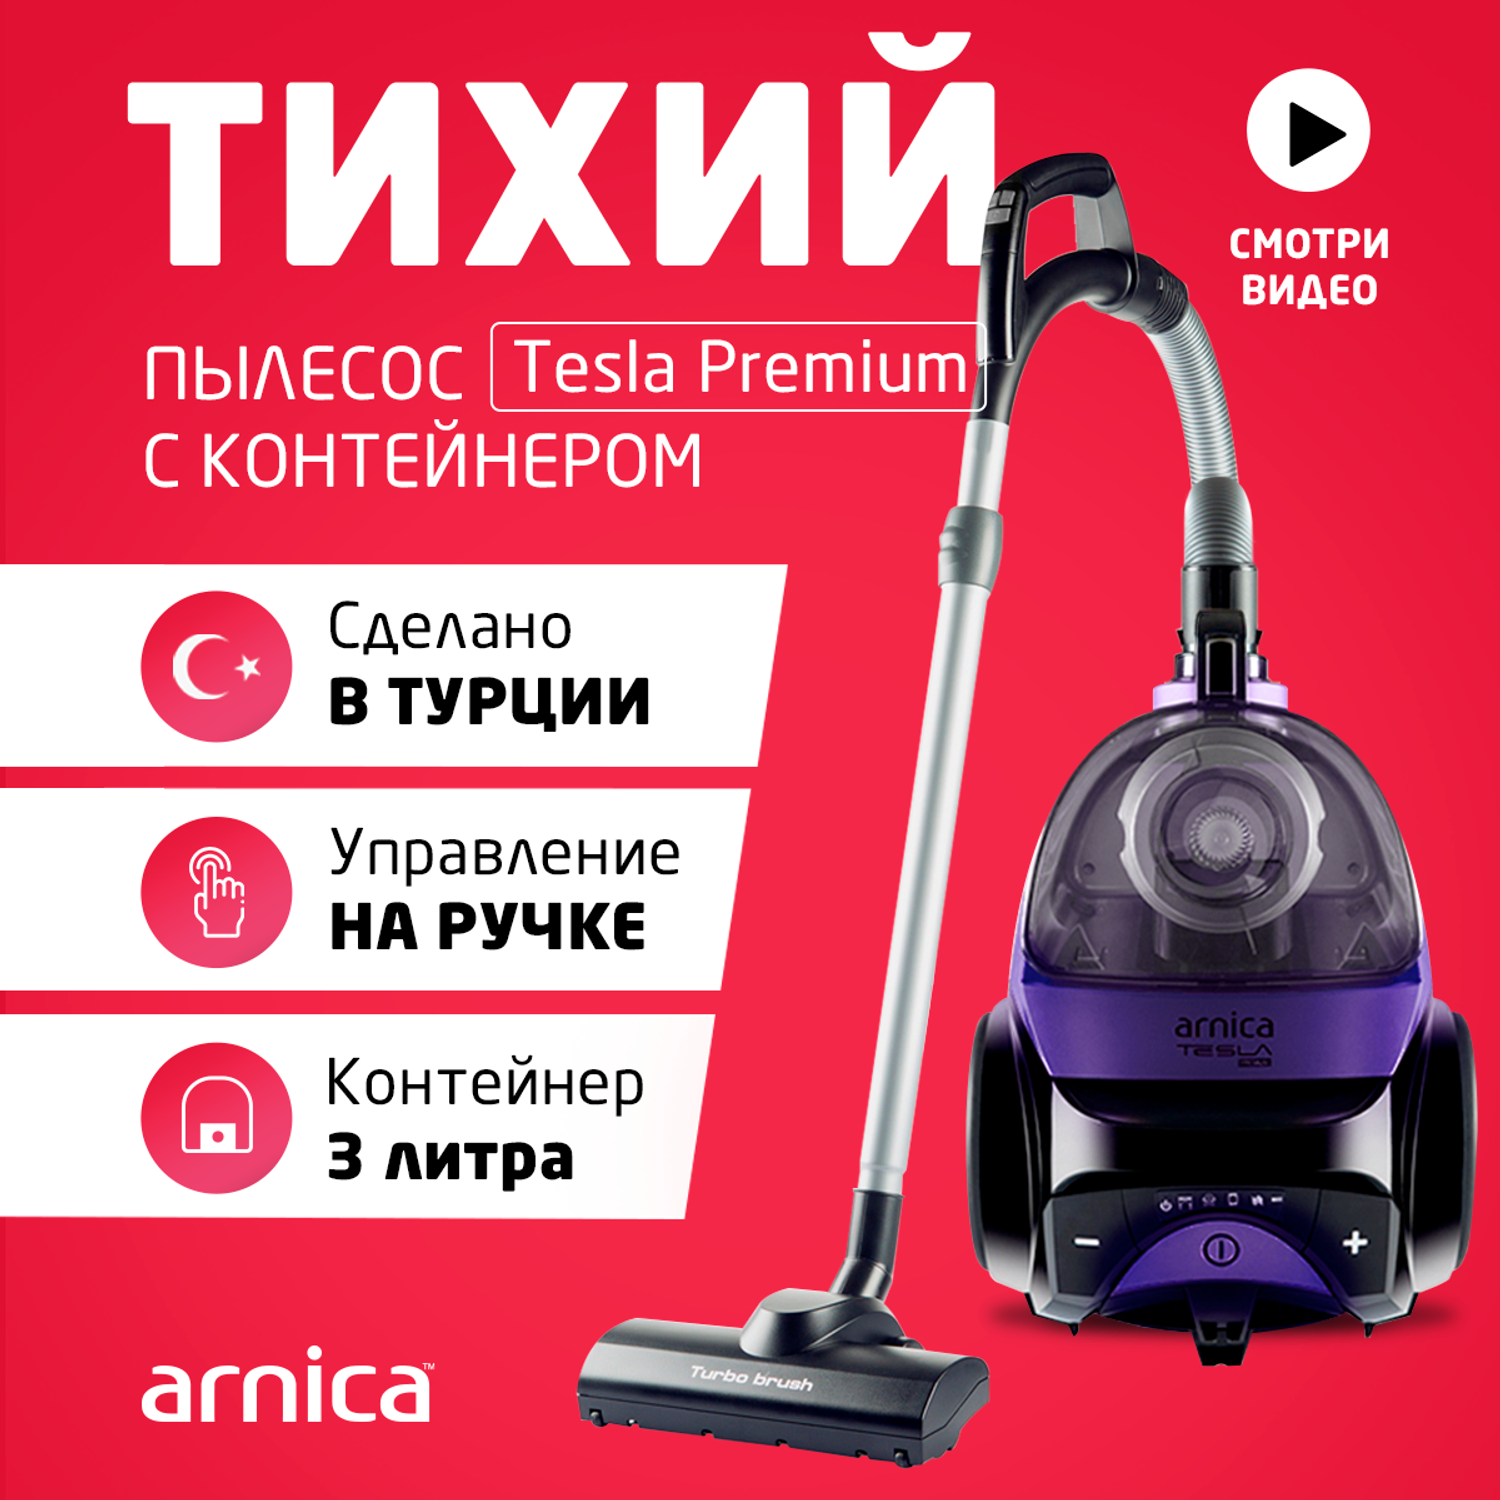 Пылесос ARNICA Tesla Premium фиолетовый - фото 1